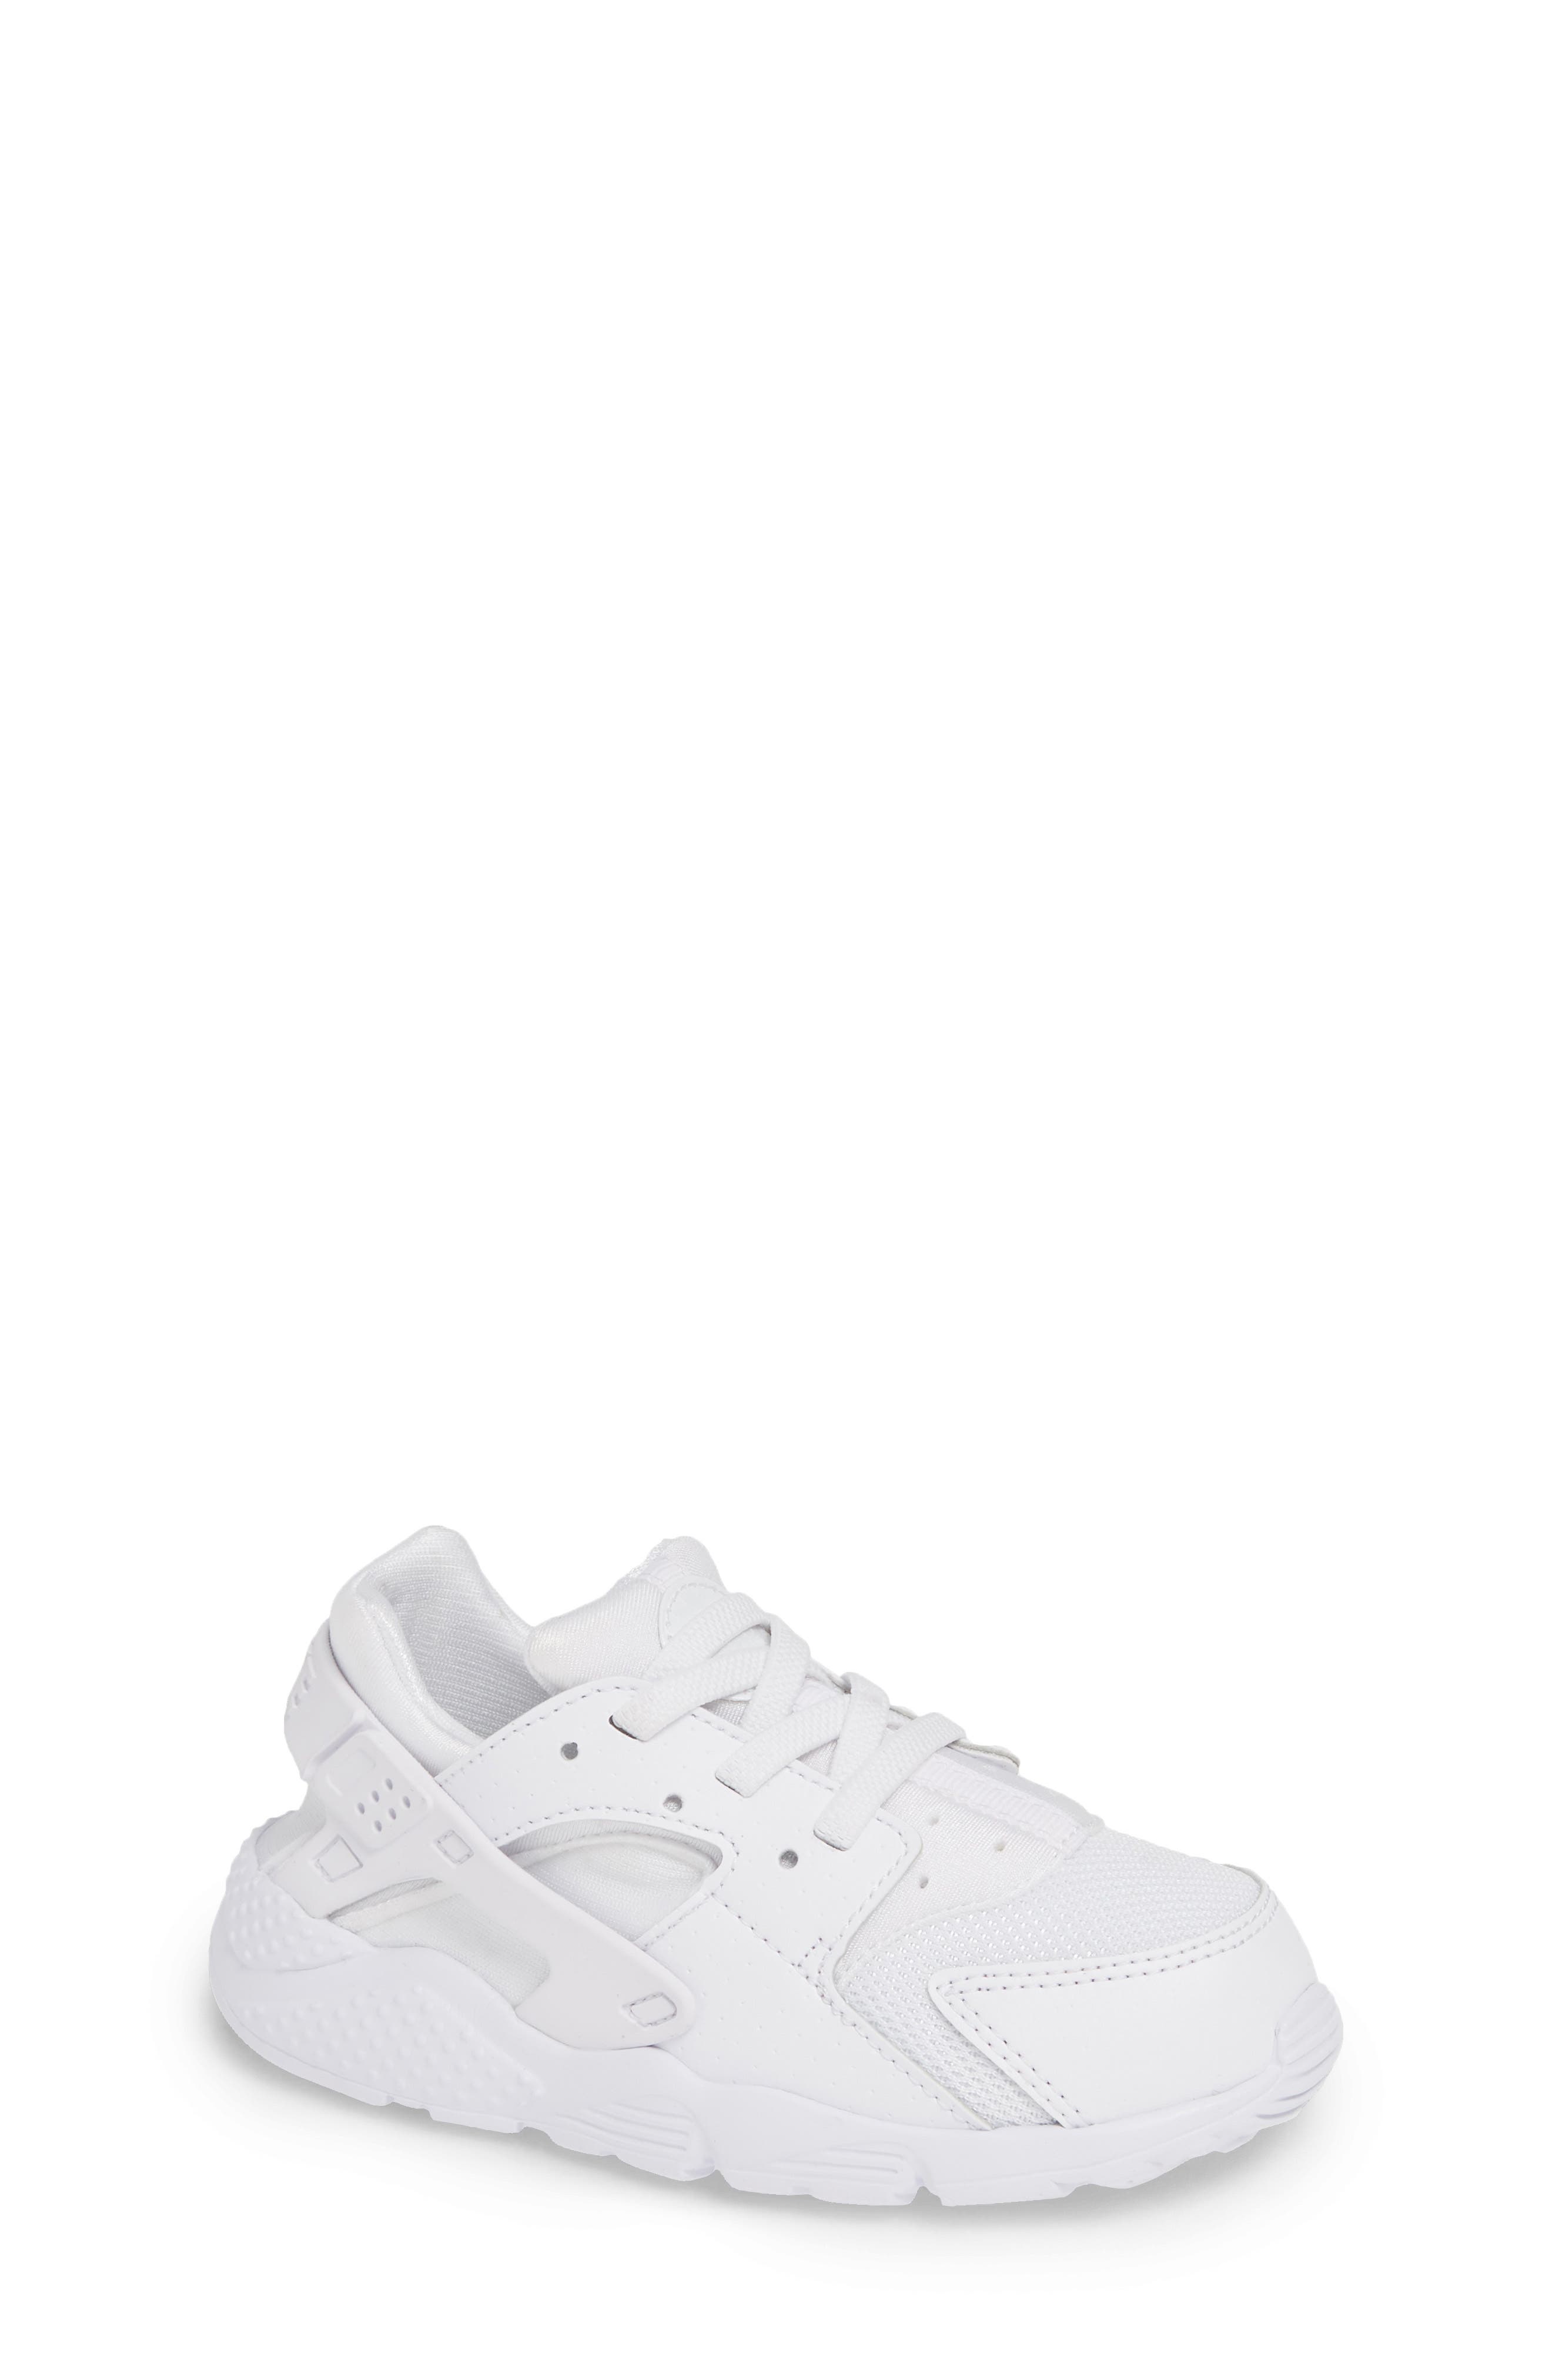 huarache sneakers white